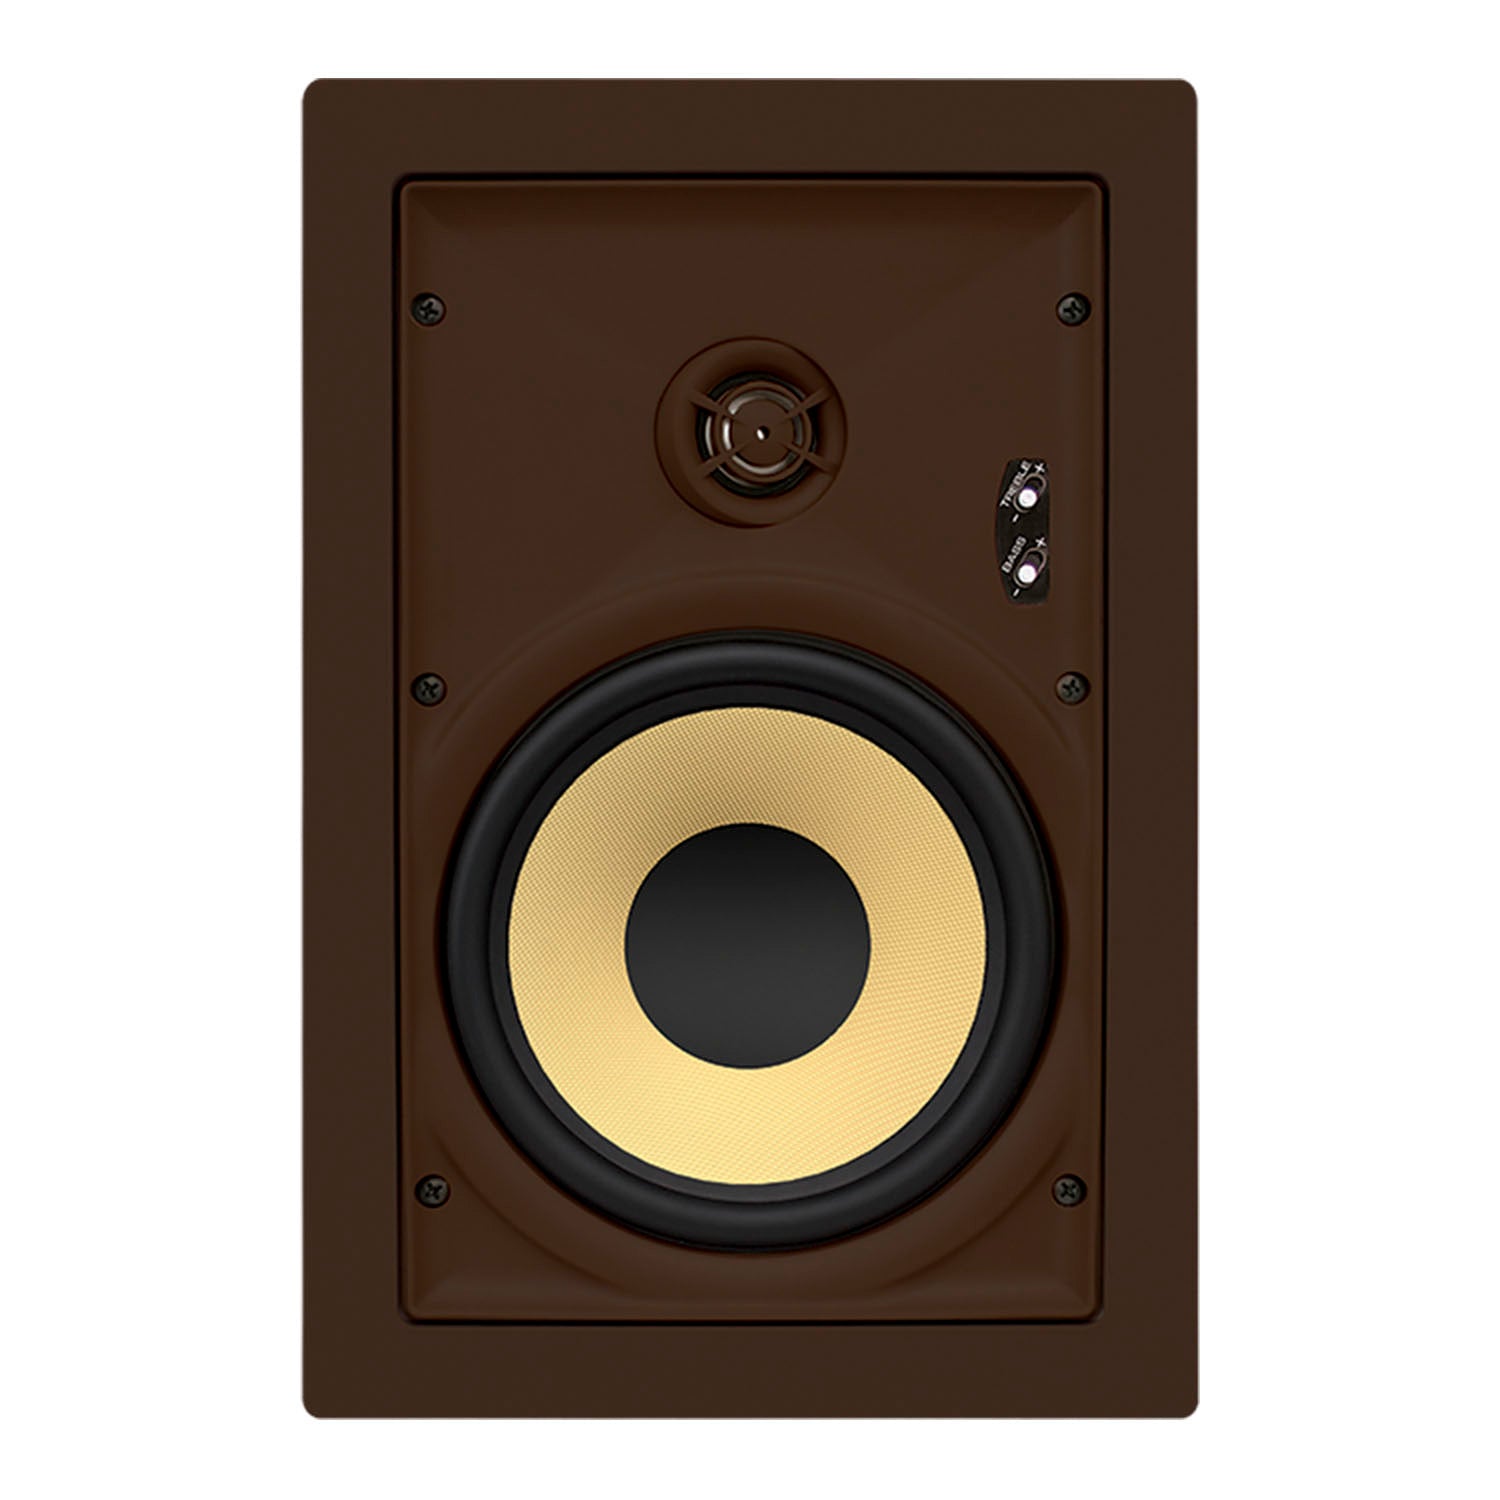 Proficient Audio Signature Series IW695s 6.5" Inceiling Speaker  - piece